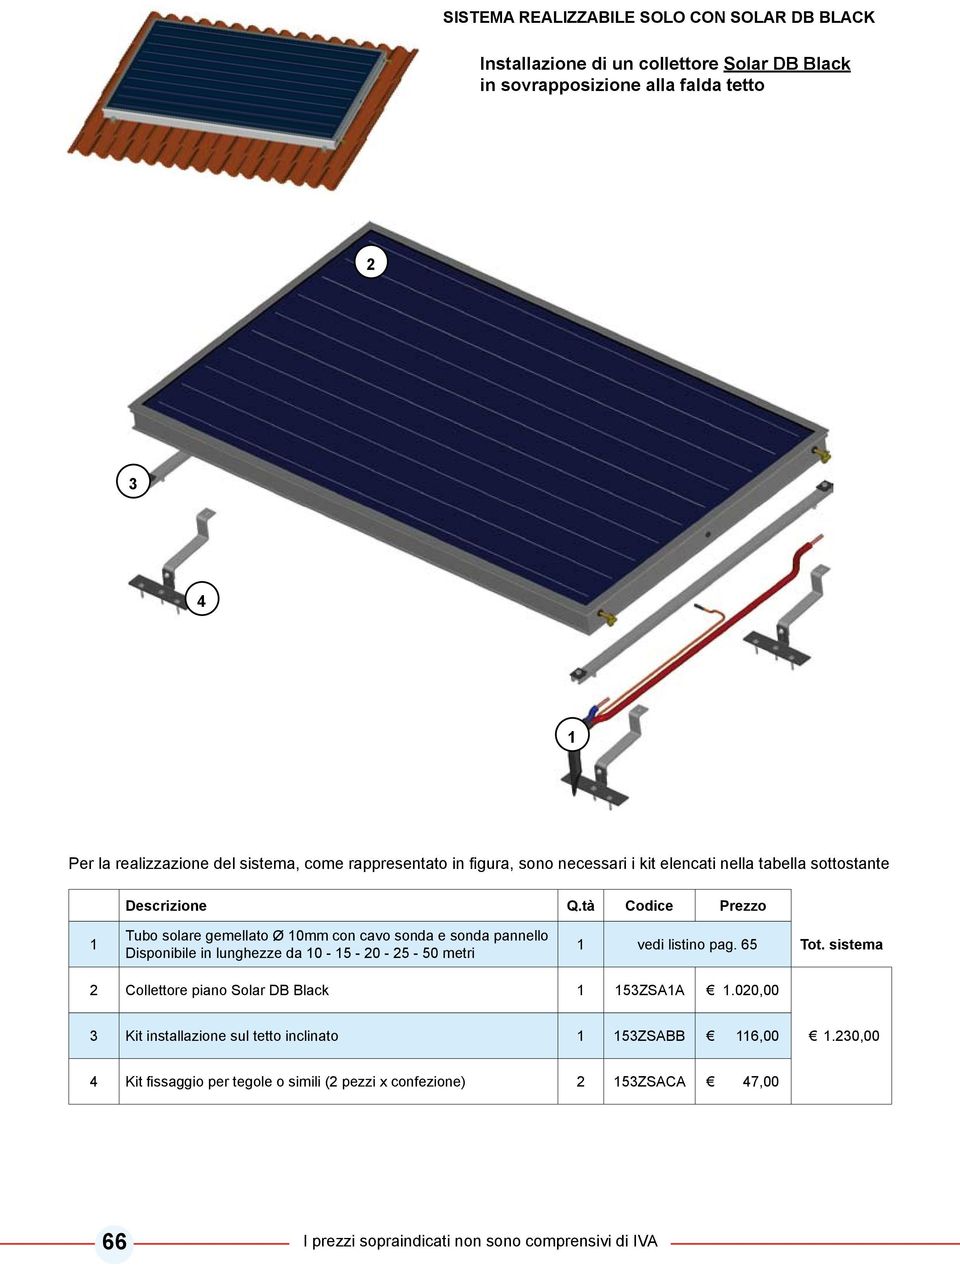 sistema Collettore piano Solar DB Black ZSAA.00,00 Kit installazione sul tetto inclinato ZSABB 6,00.